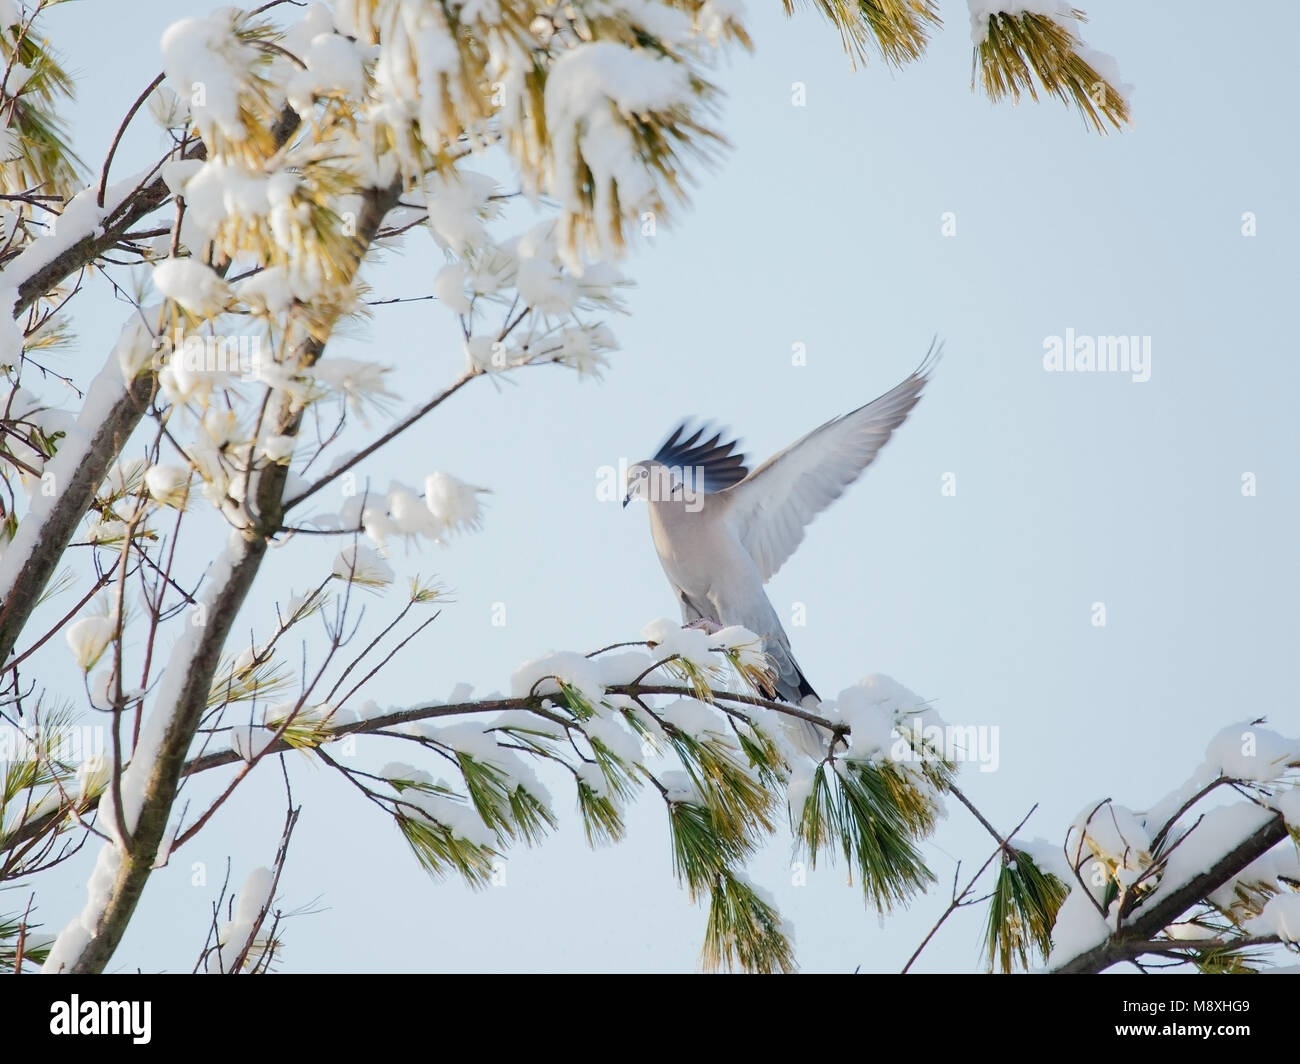 Turkse Tortel landend in boom in de sneeuw, Eurasian Collared Dove landing in tree in the snow Stock Photo